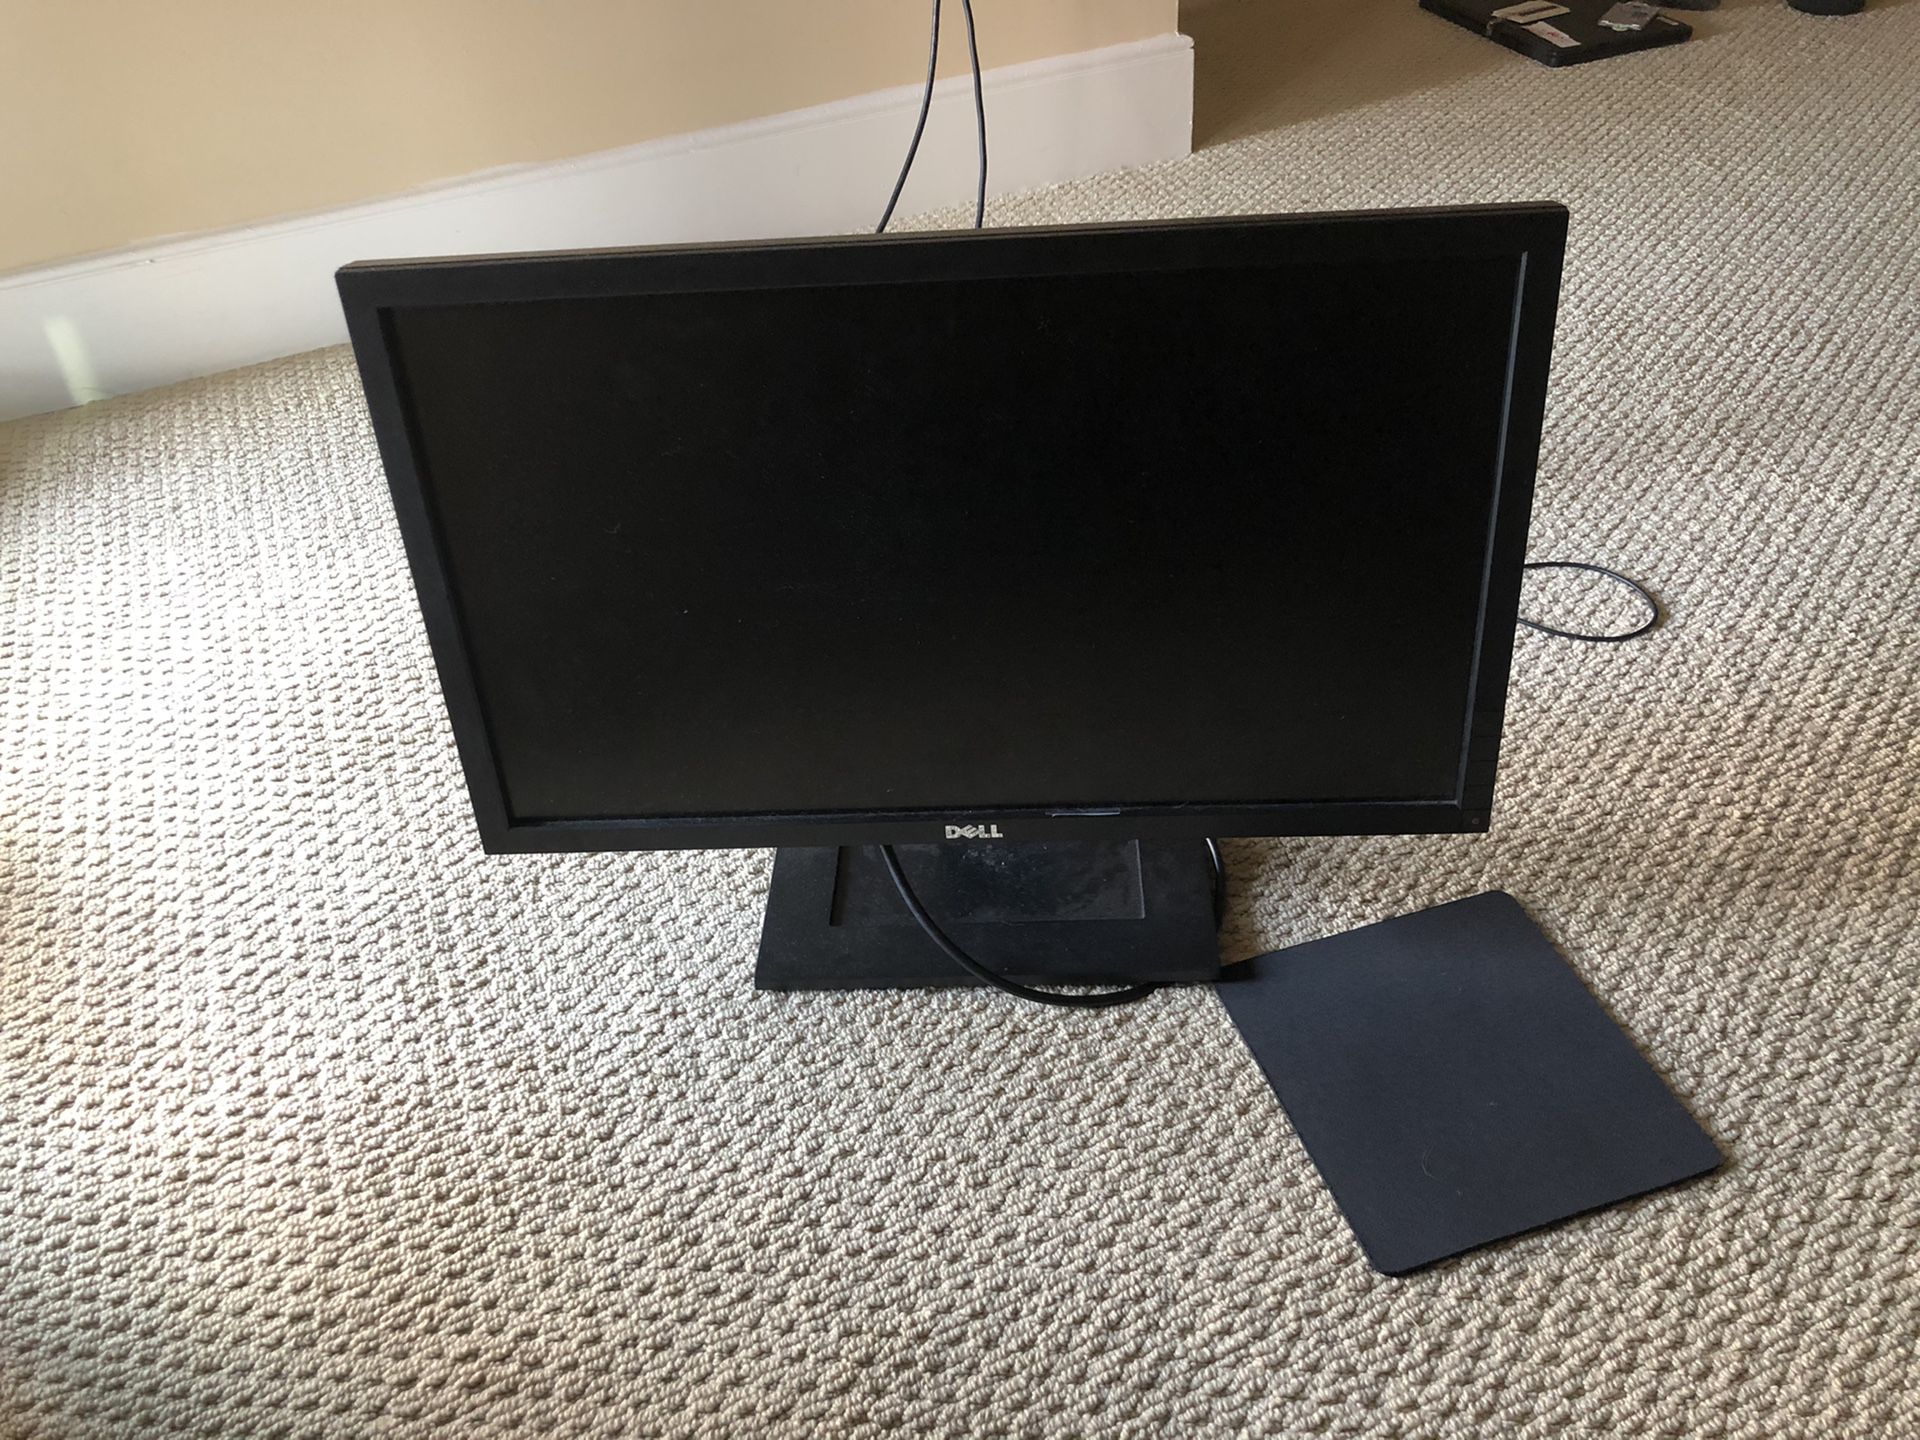 23” Dell computer monitor